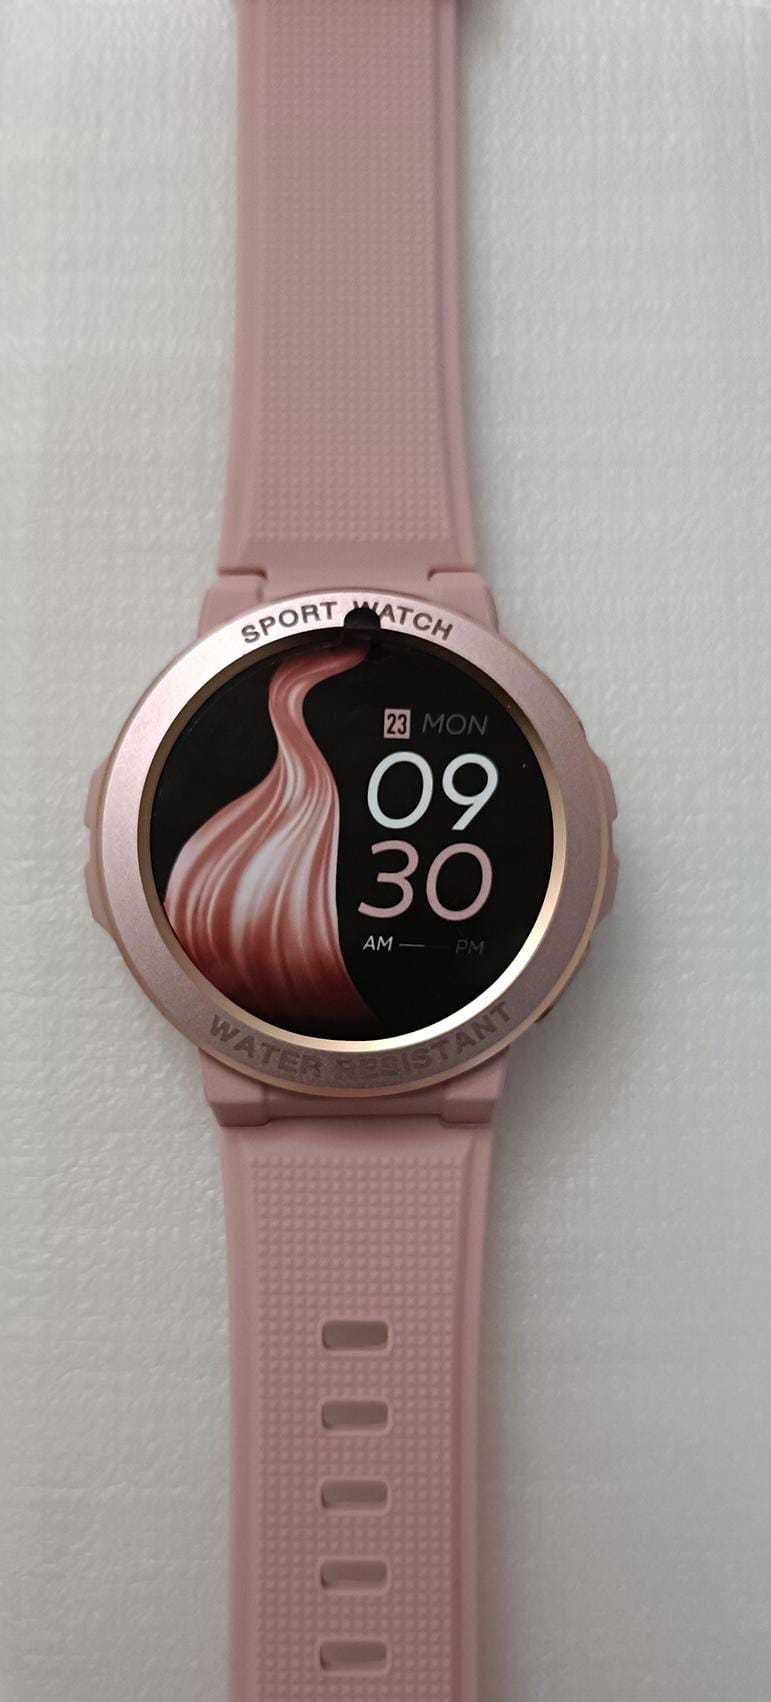 Smartwatch - MK60 Sport Watch